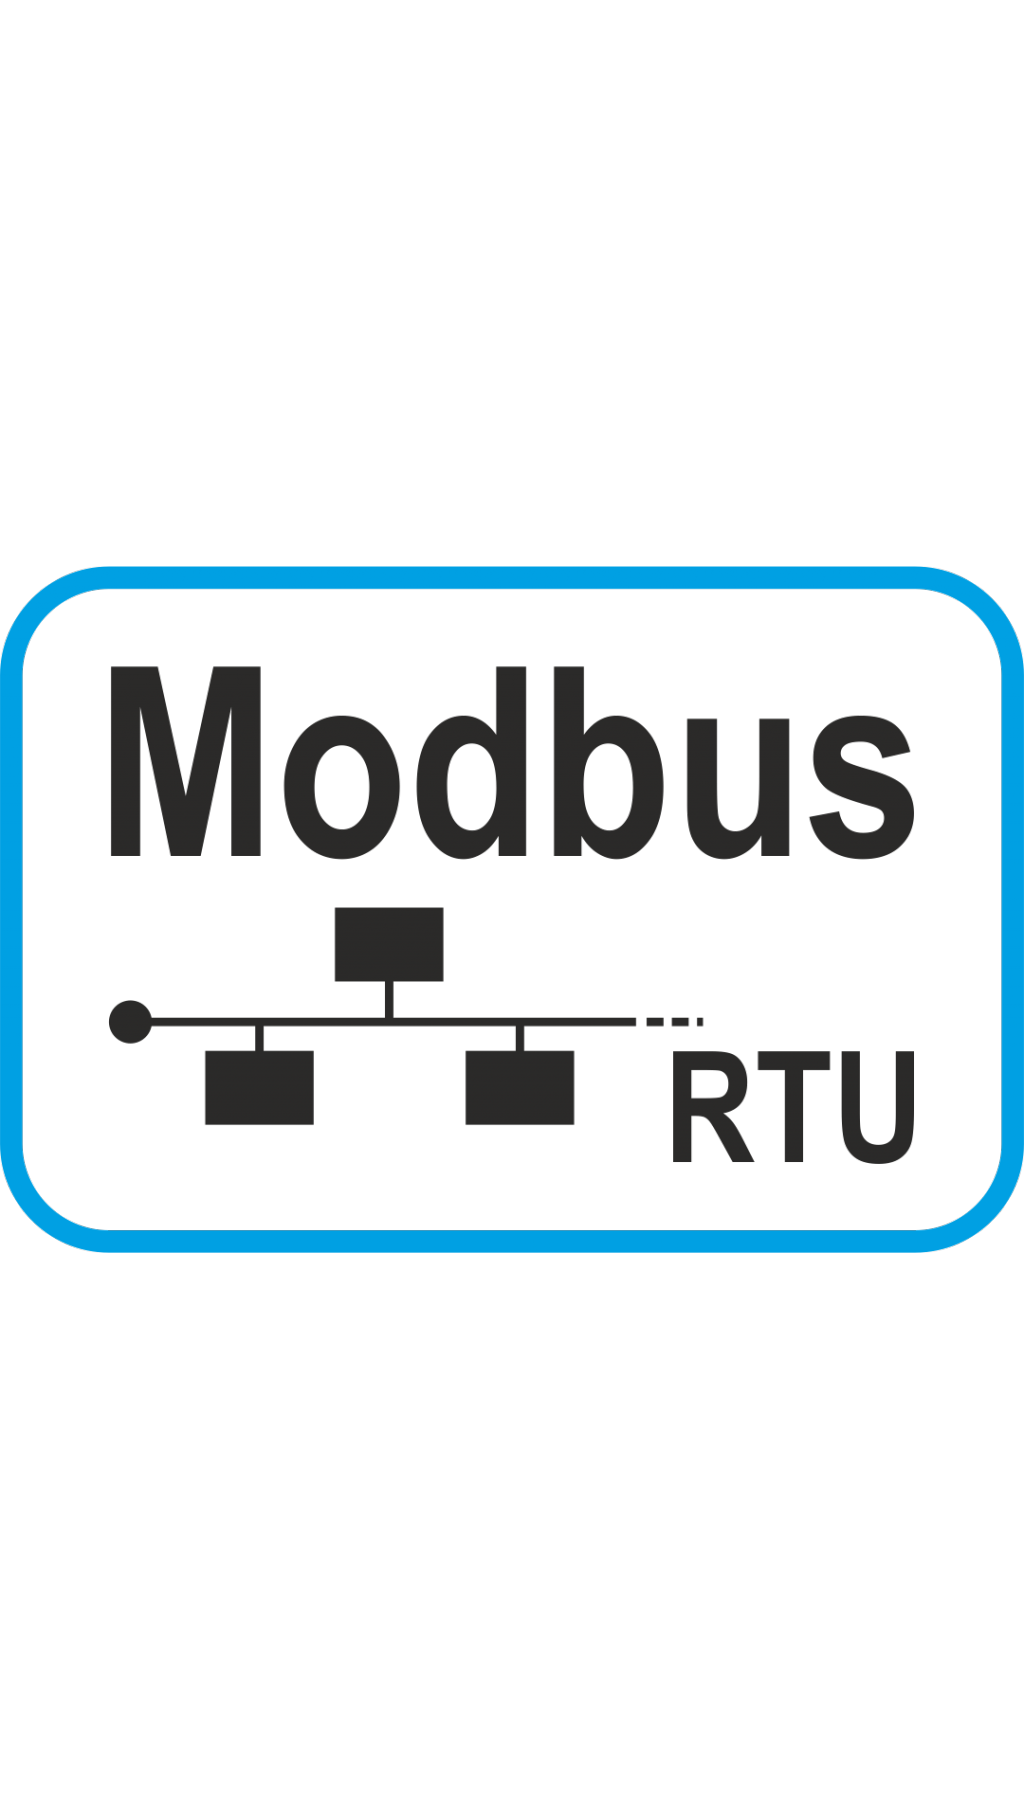 Modbus - RTU